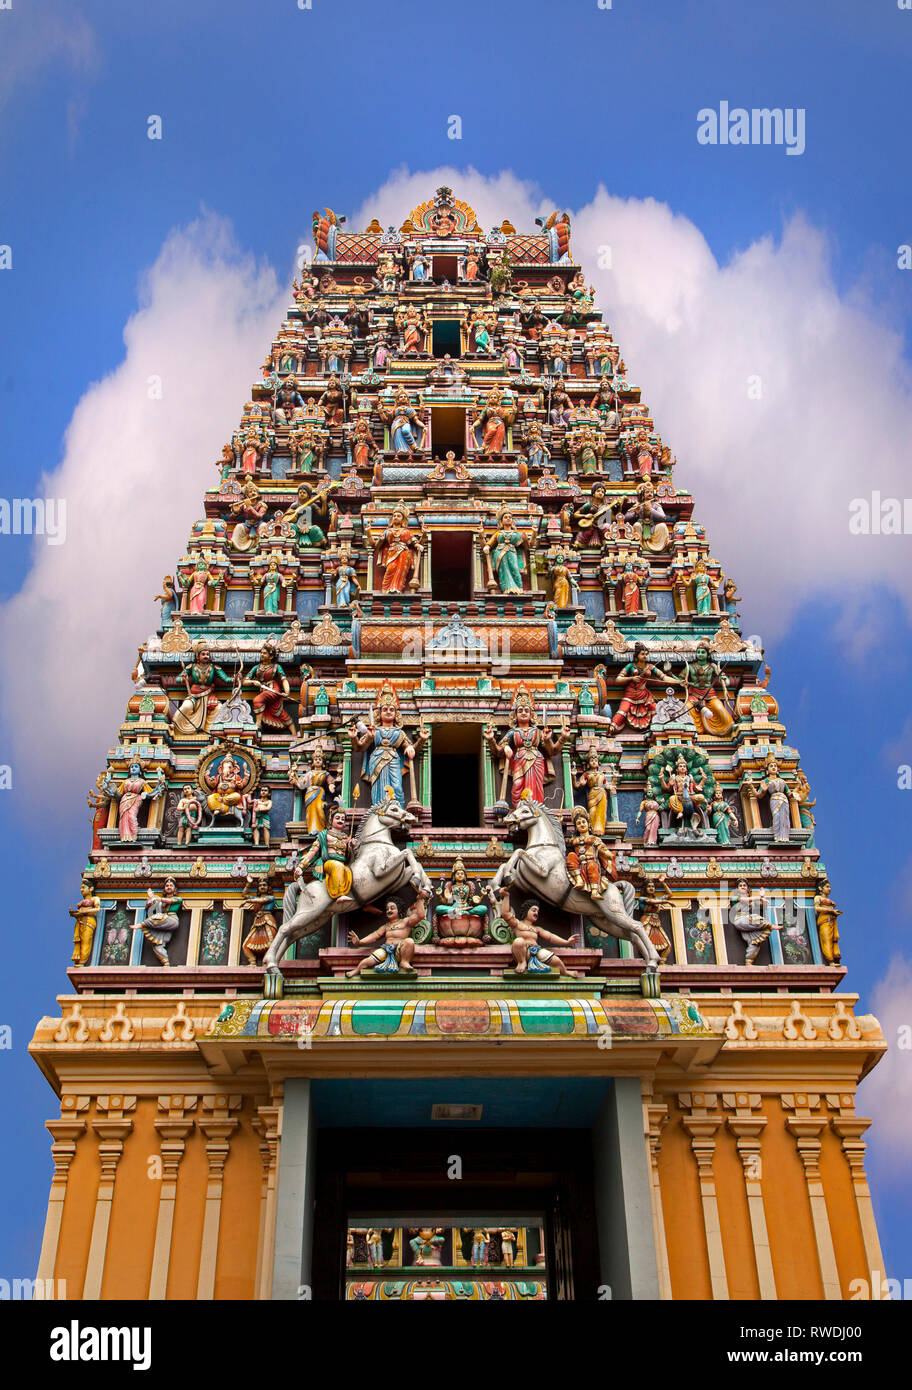 Sri Mariamman temple Dhevasthanam, con el ornamentado Gopuram torre 'raja' en el estilo de los templos del sur de la India. Kuala Lumpur, Malasia Foto de stock